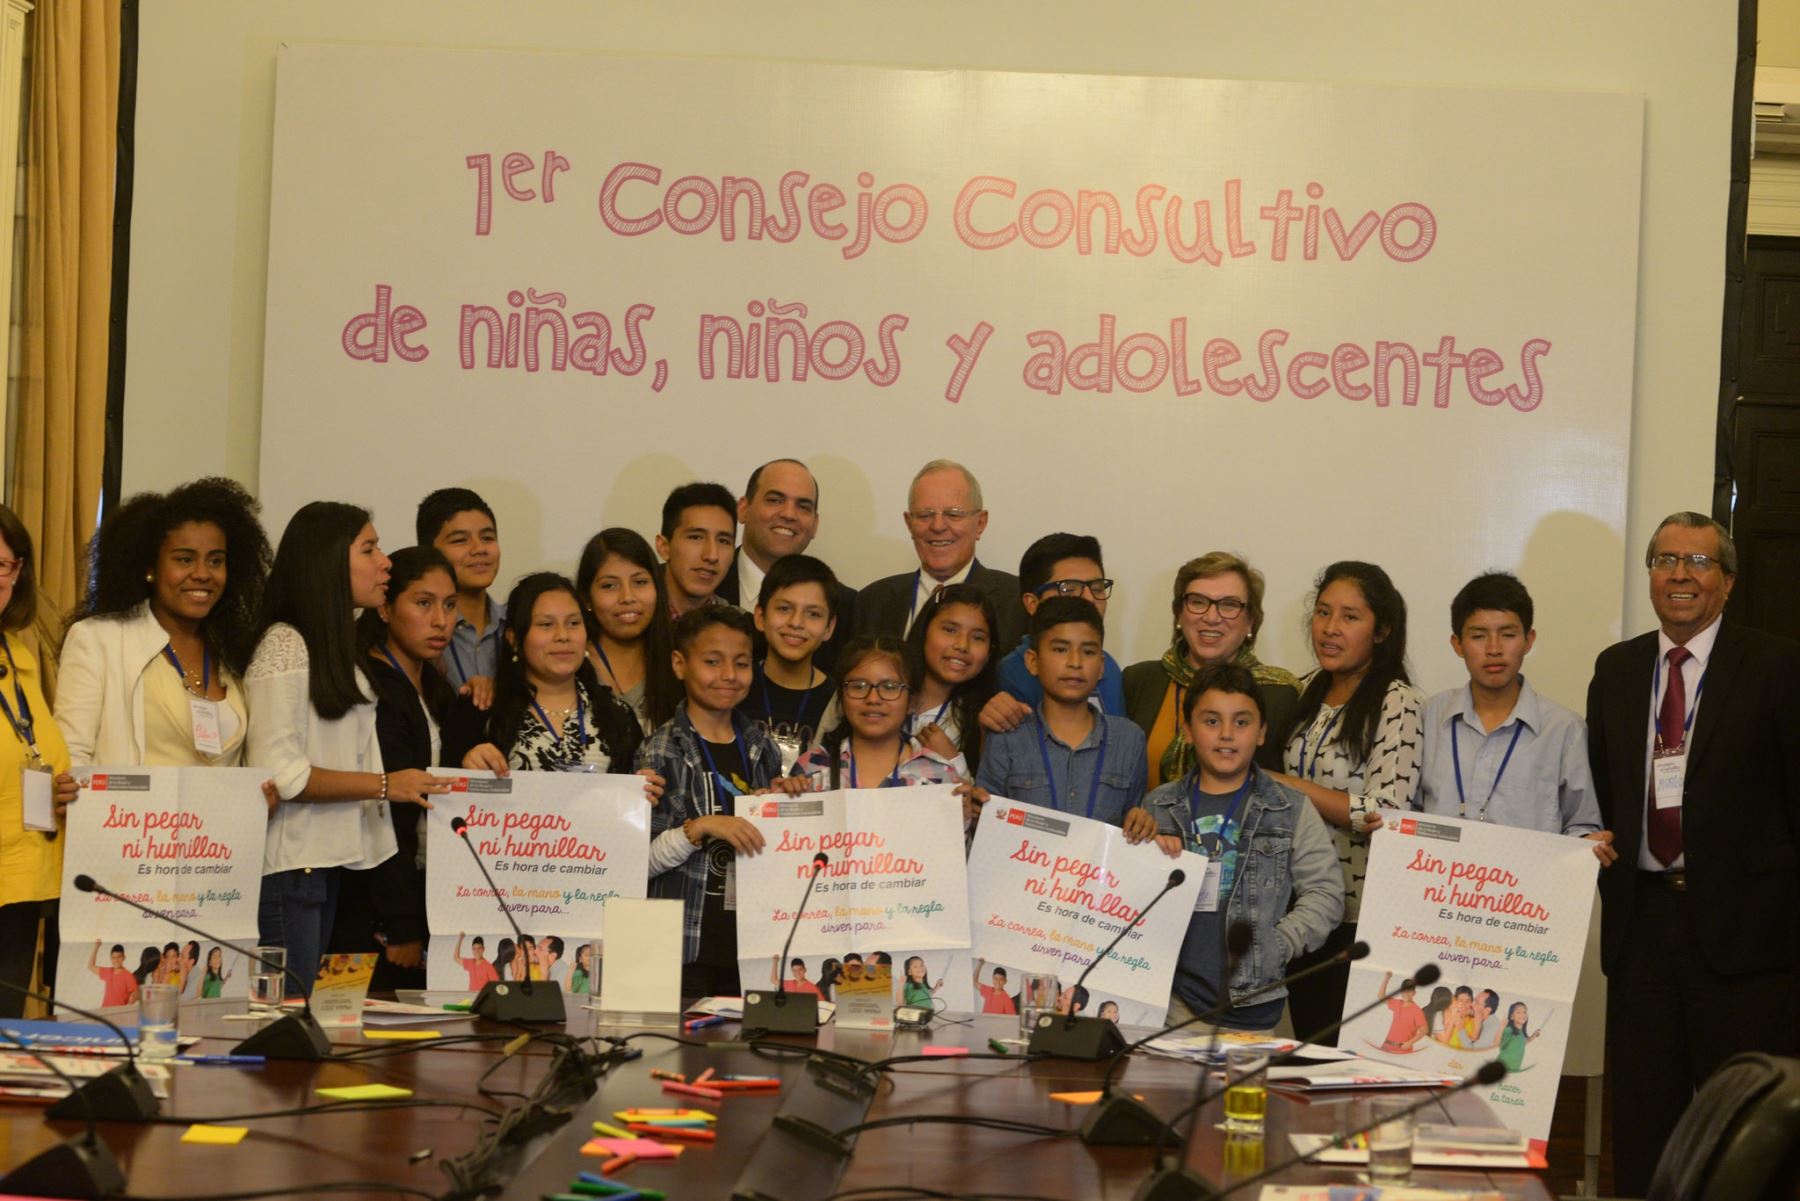 Sin pegar ni humillar, es hora de cambiar, nueva campaña contra el maltrato infantil. Foto: Andina/Difusión